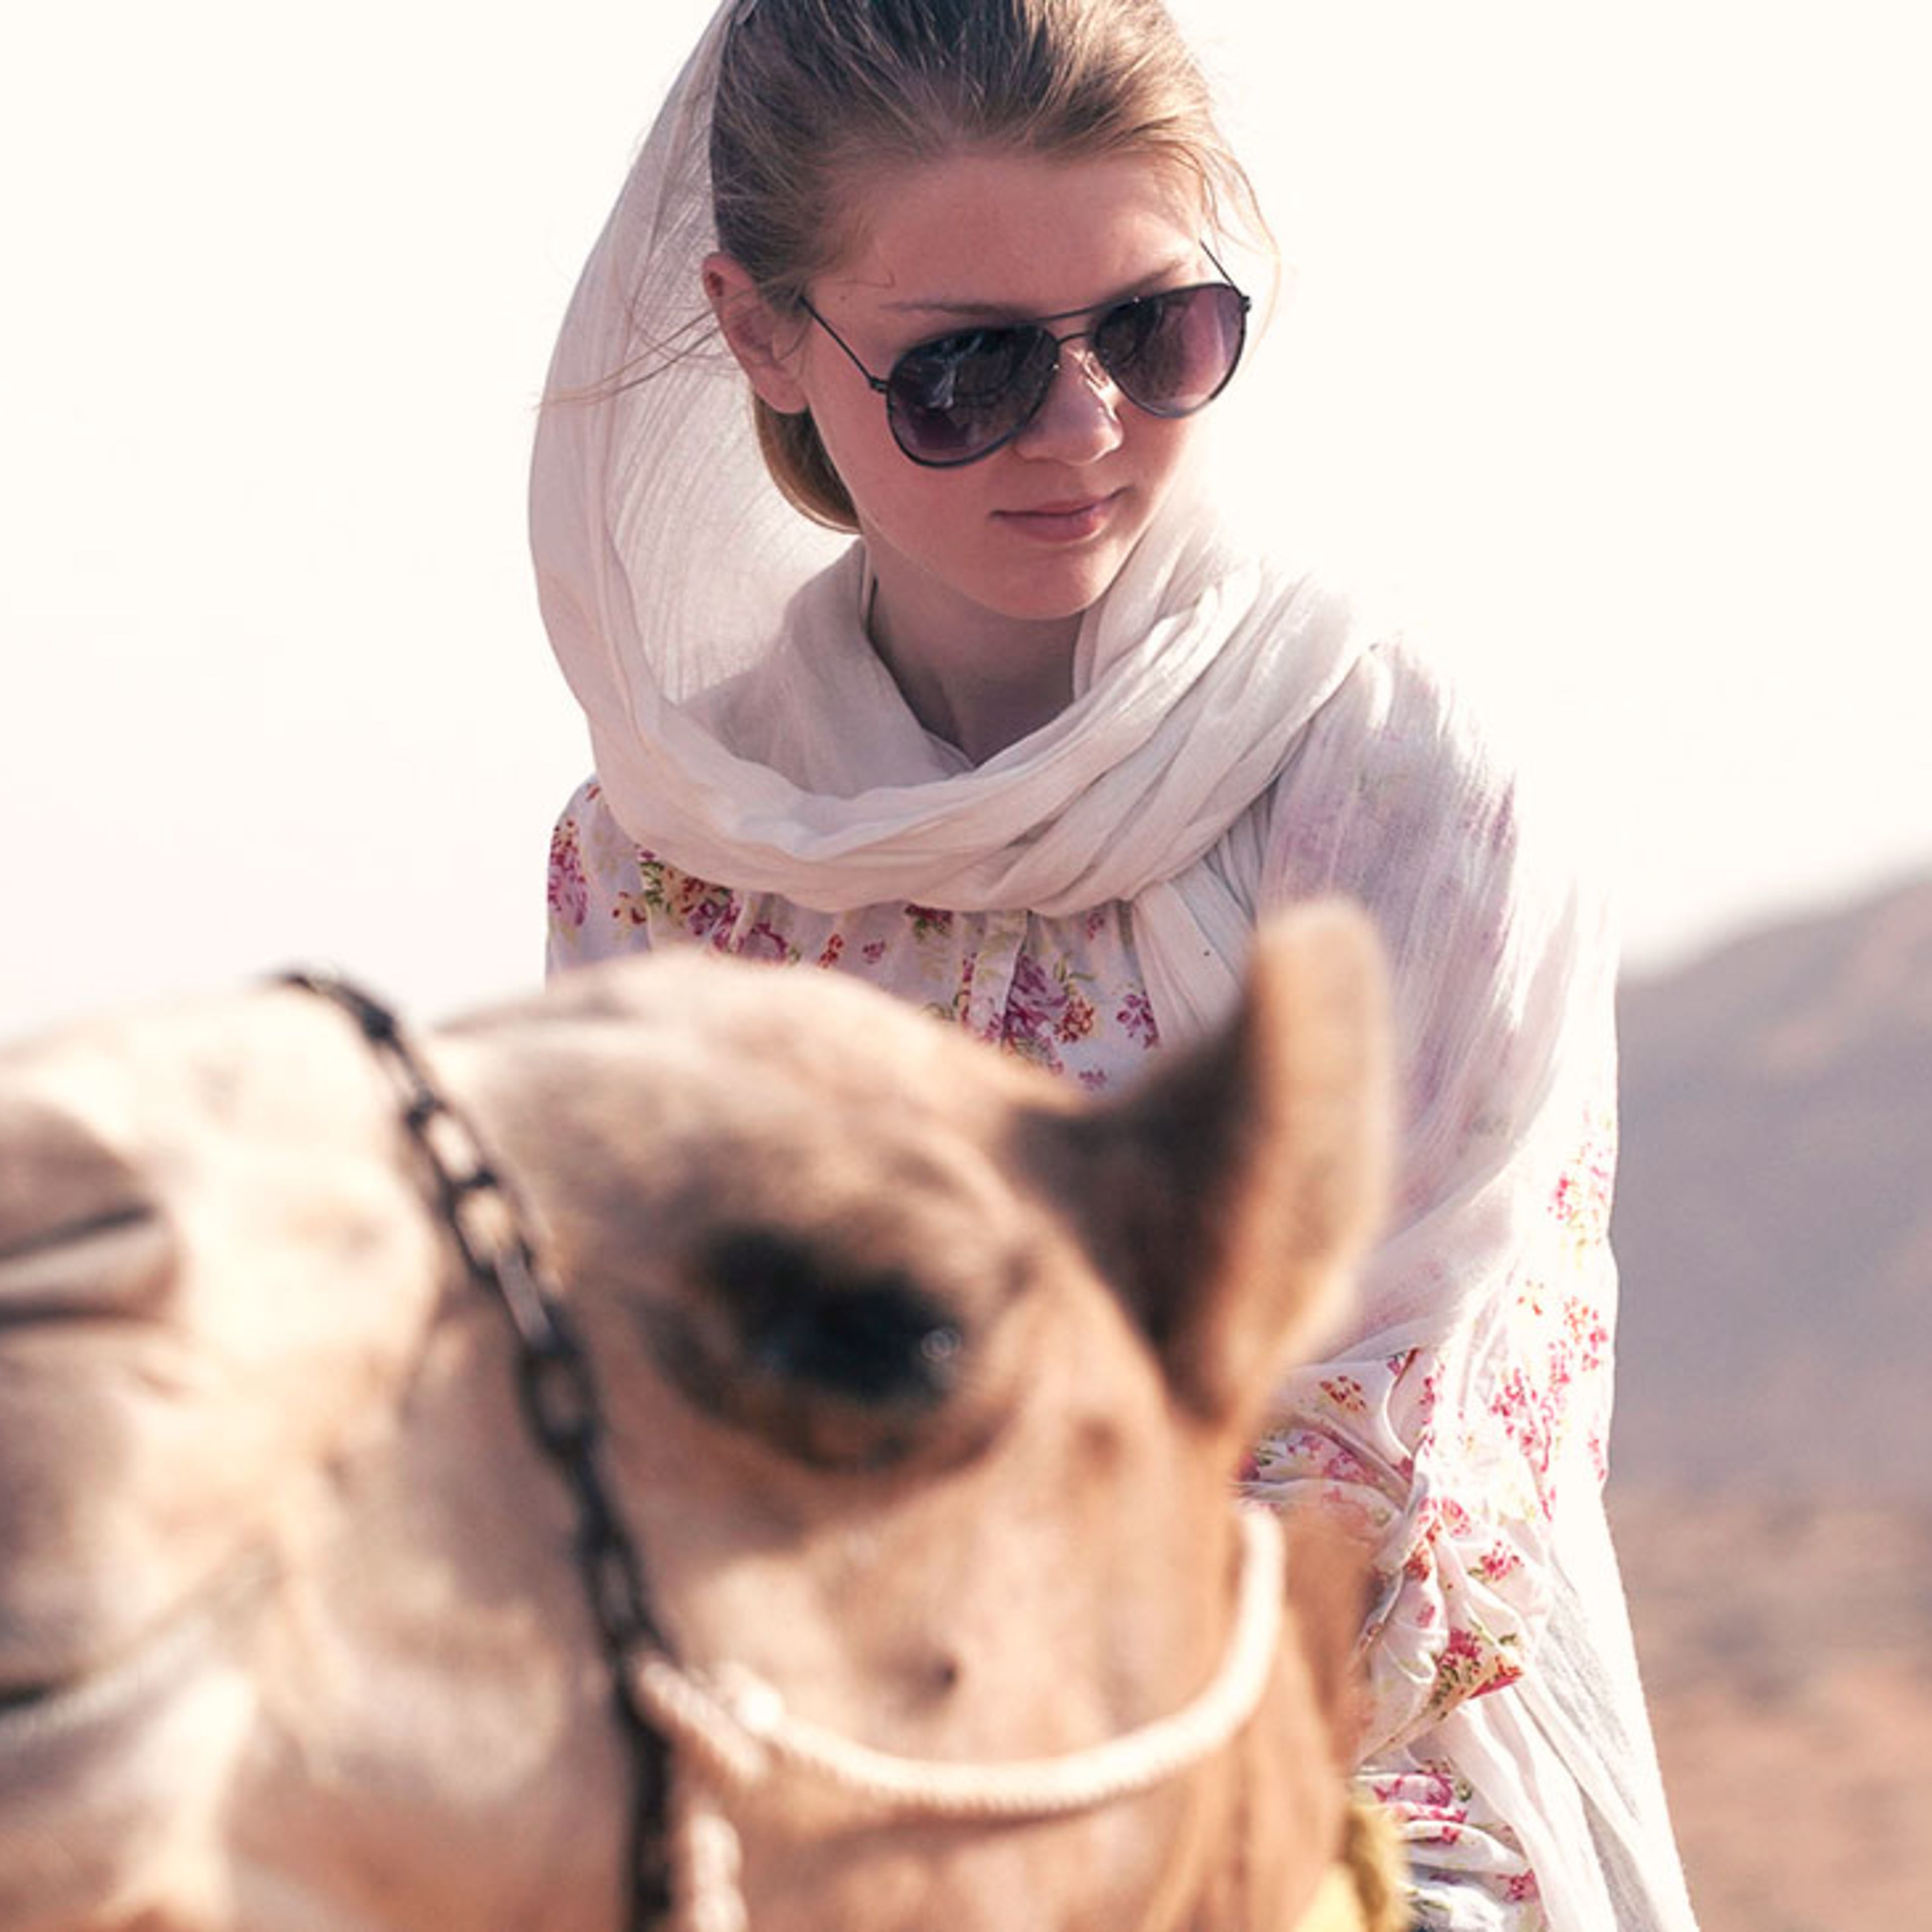 Voyage en famille à Oman